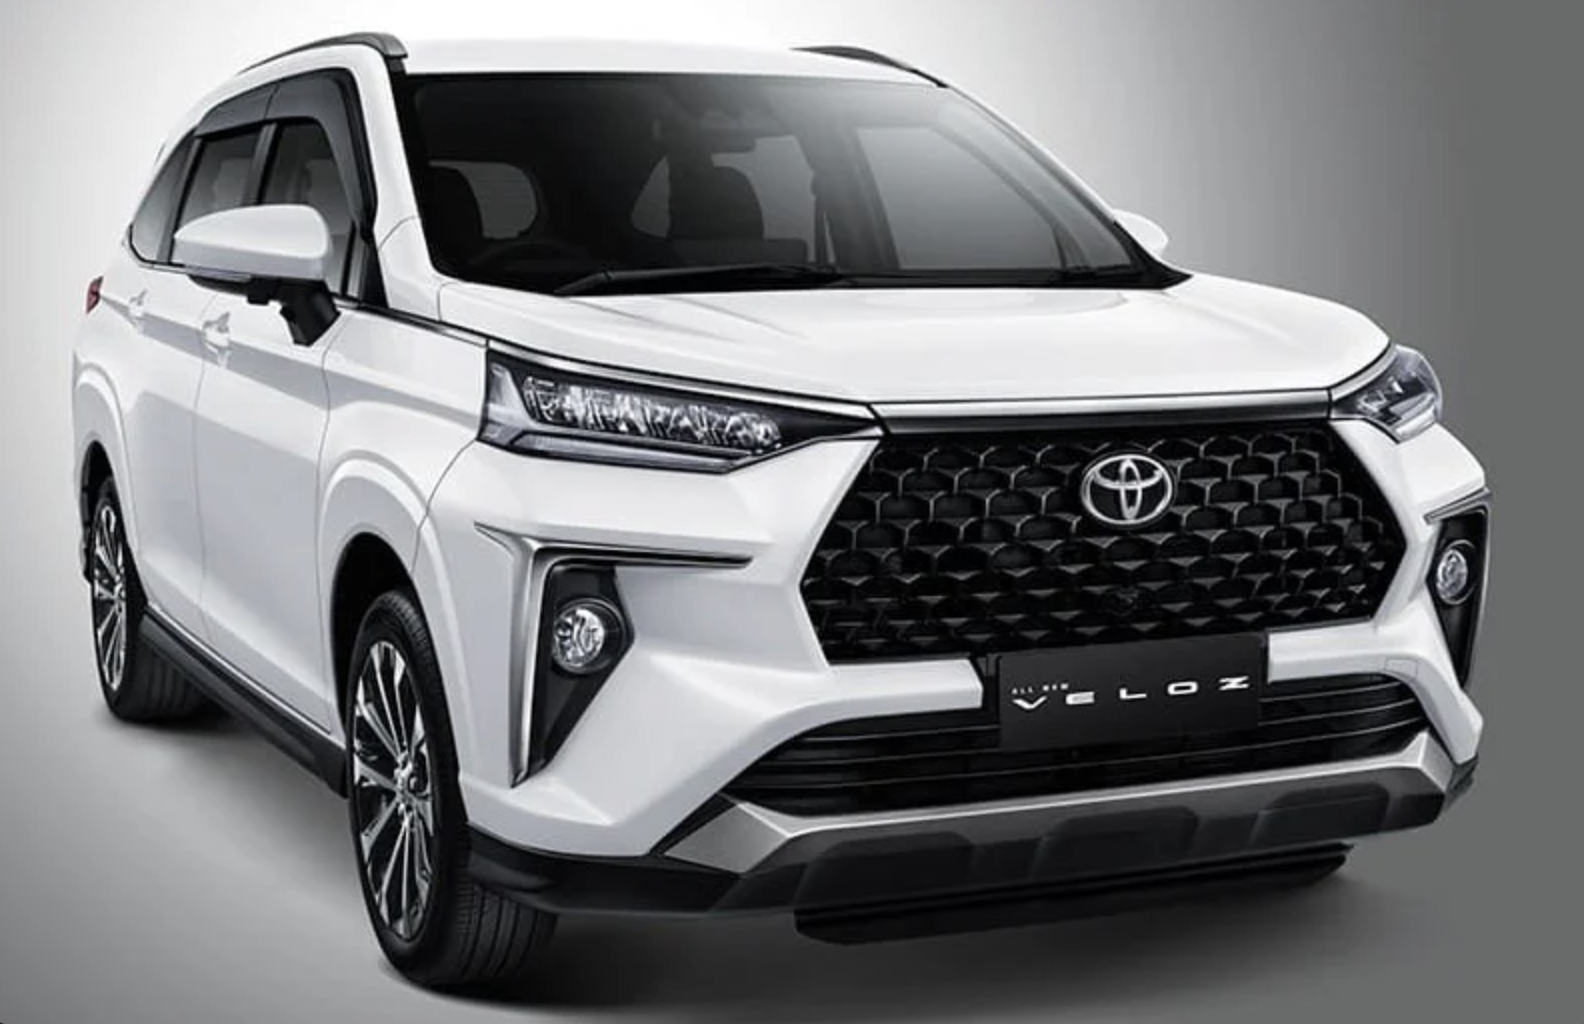 Đại lý nhận đặt cọc Toyota Veloz 2022, dự kiến giao xe tháng 3 Toyota Avanza 2022 chính thức ra mắt, giá từ 14.450 USD screen-shot-2021-11-11-at-003400.png